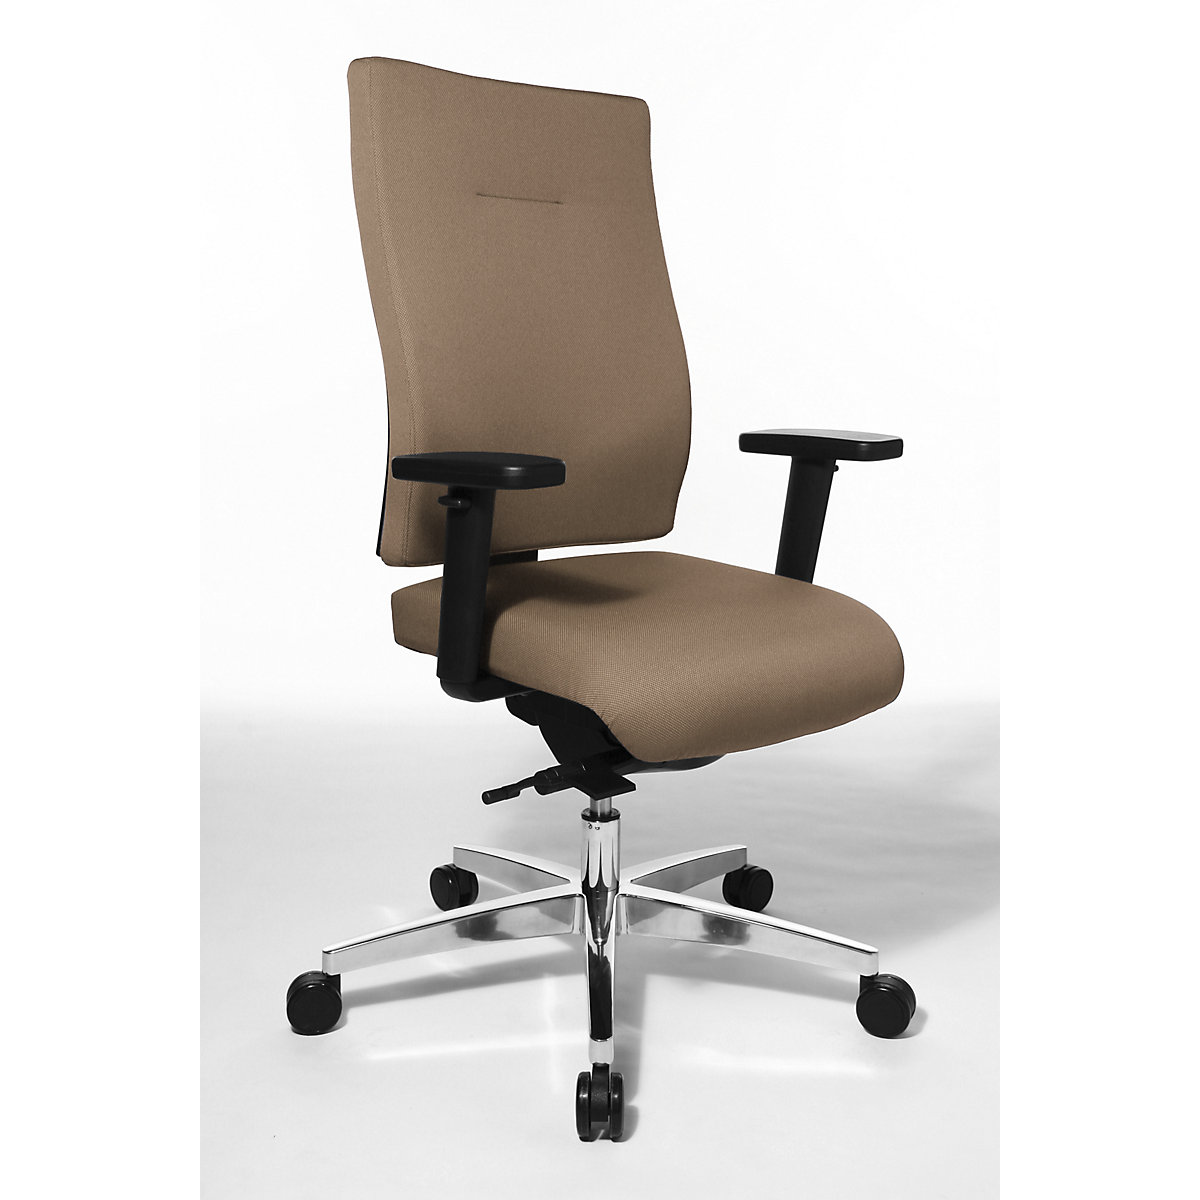 Bürodrehstuhl PROFI STAR 15 Topstar, ergonomische Rückenlehne, hellbraun-3